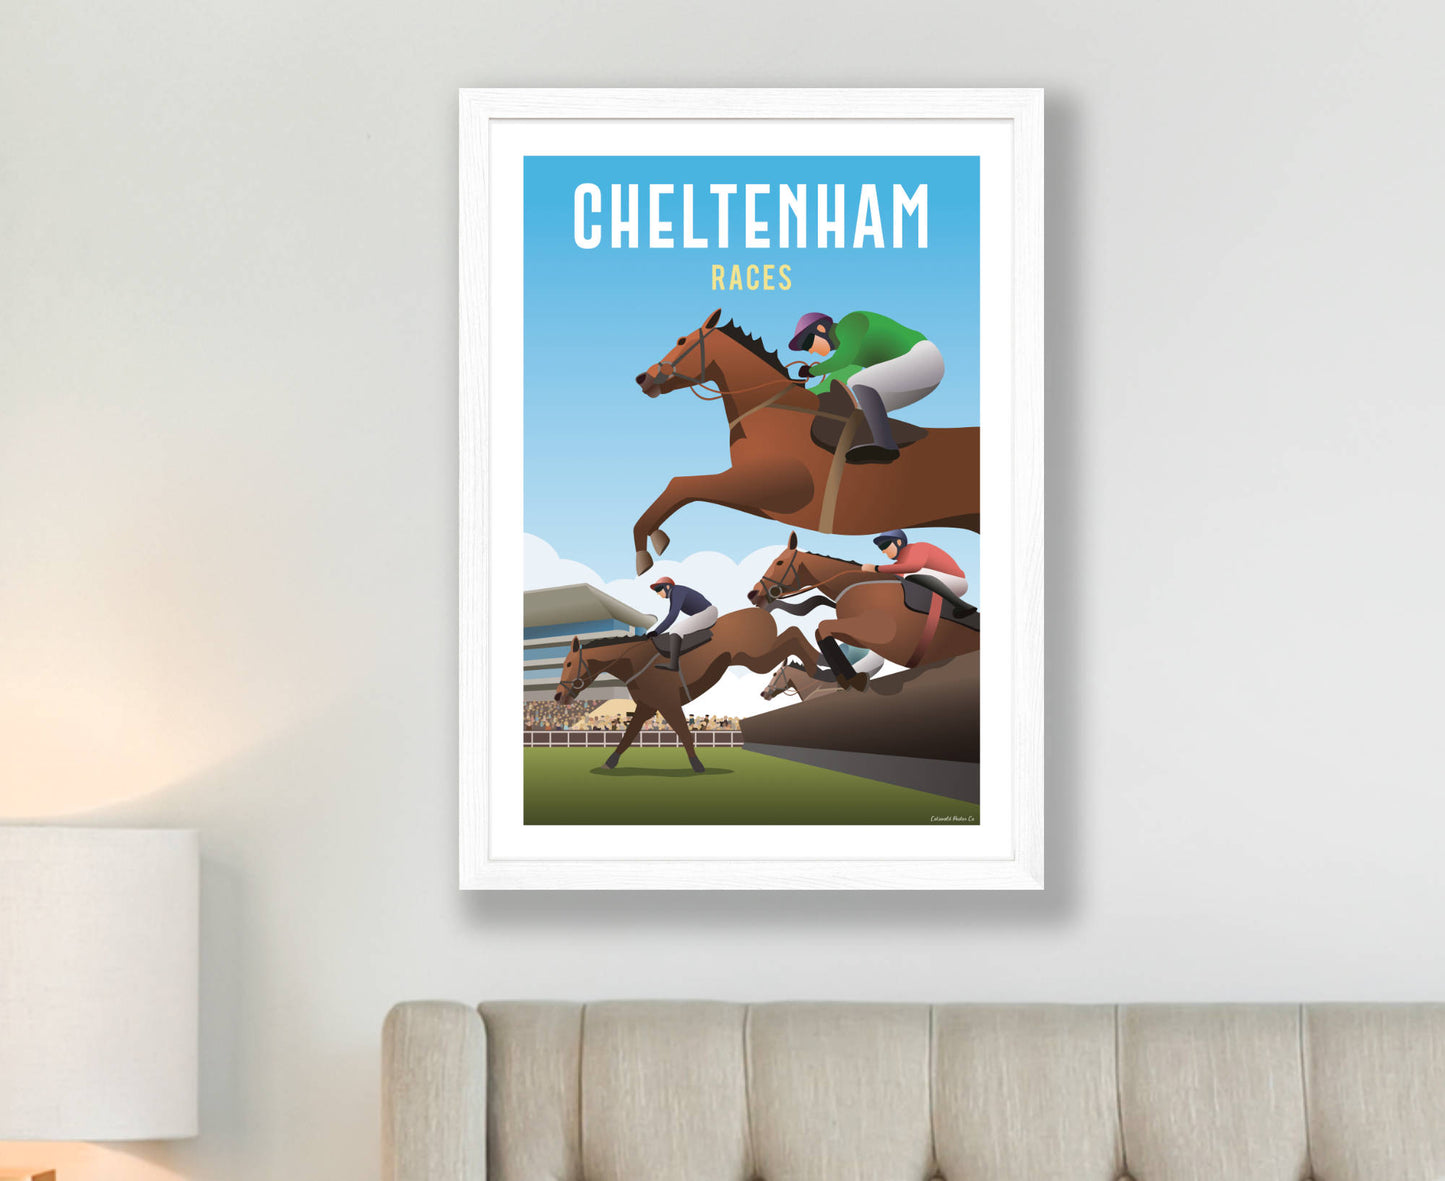 Cheltenham Races Poster in white frame